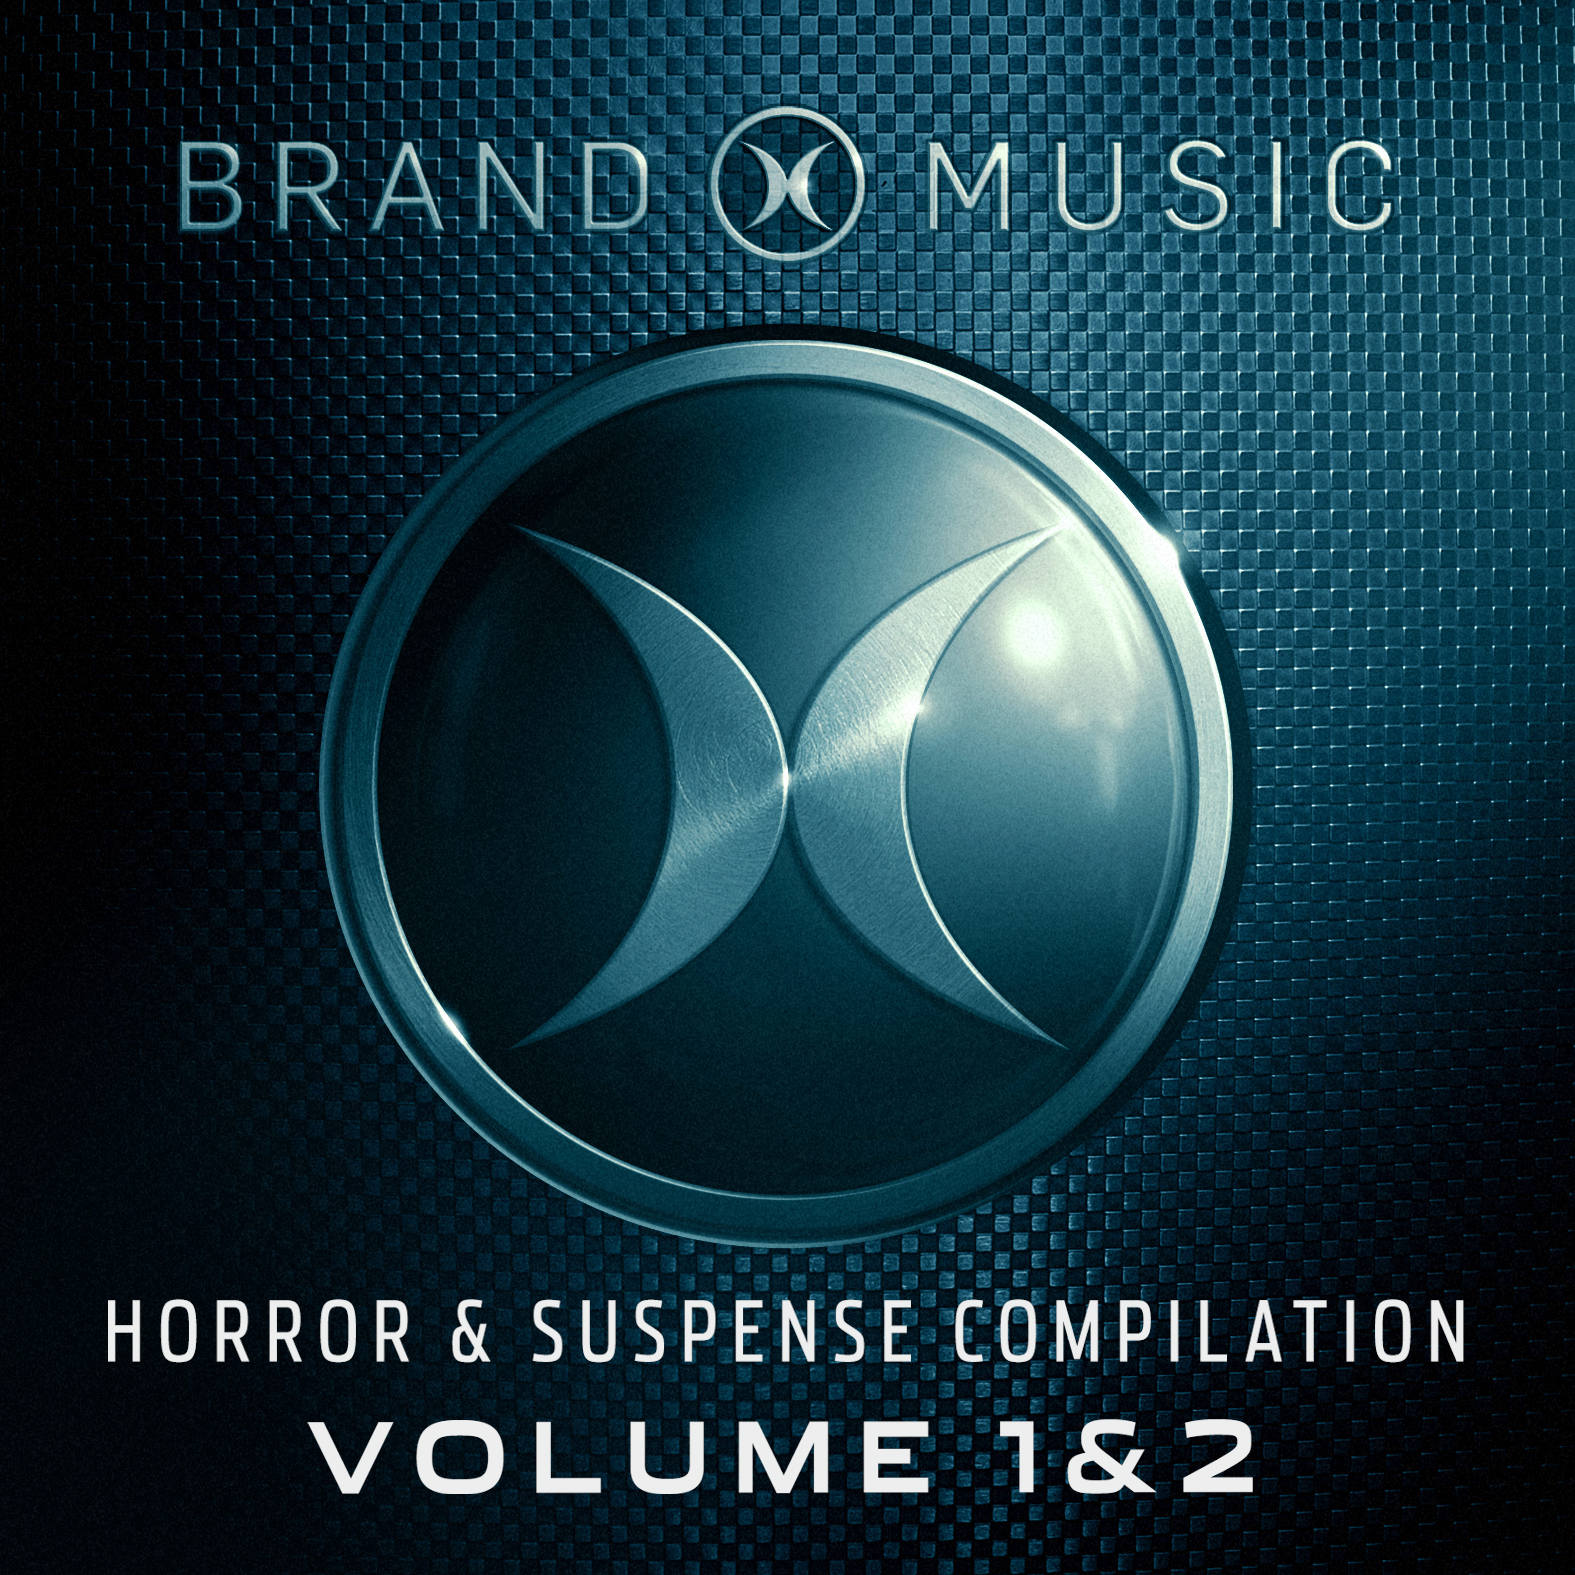 Horror & Suspense Volume 1 & 2